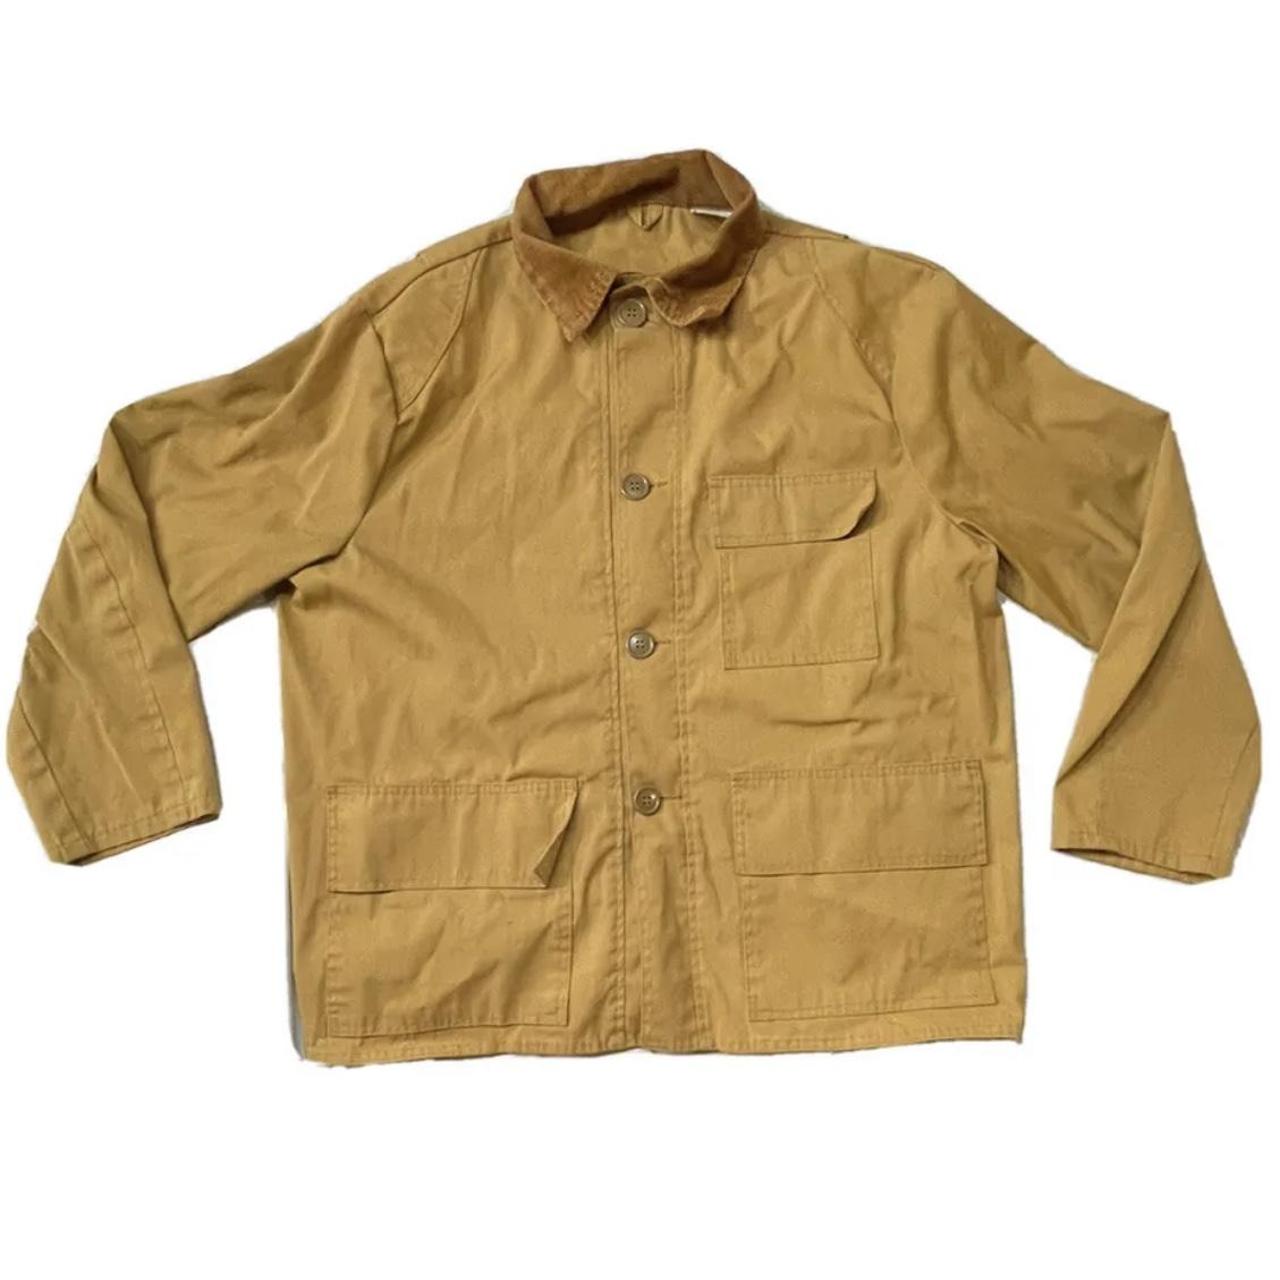 Sears Men's Tan Jacket